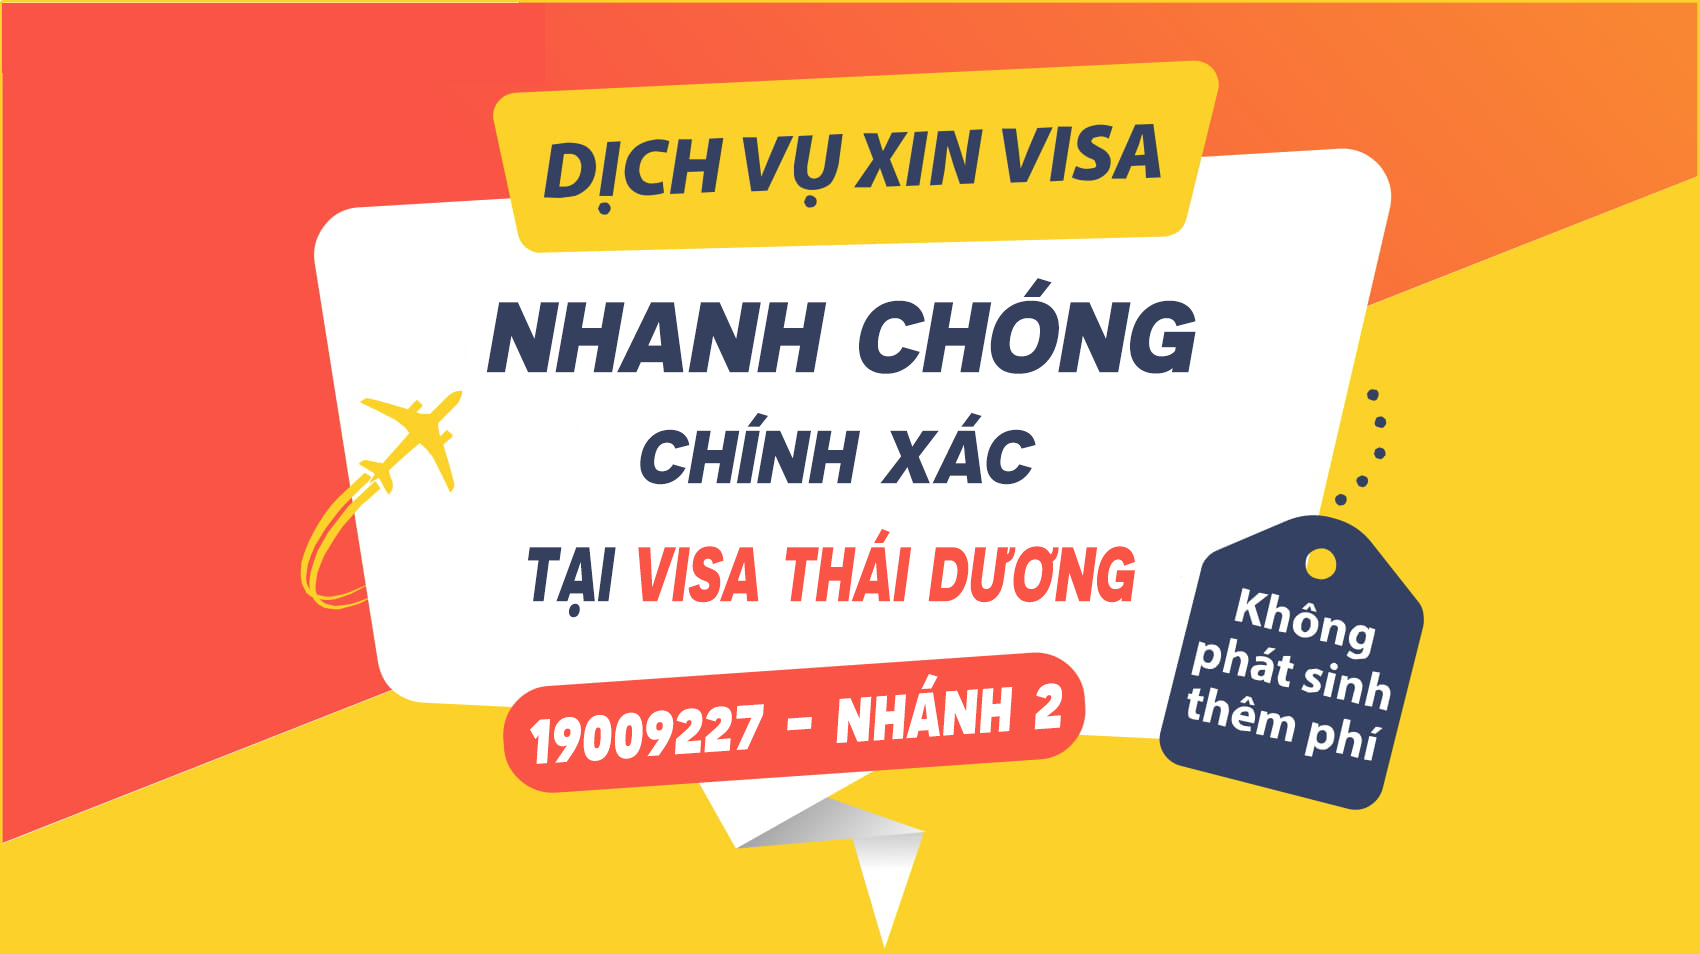 Dịch vụ xin visa tại cửa khẩu mộc bài cho khách Hàn Quốc